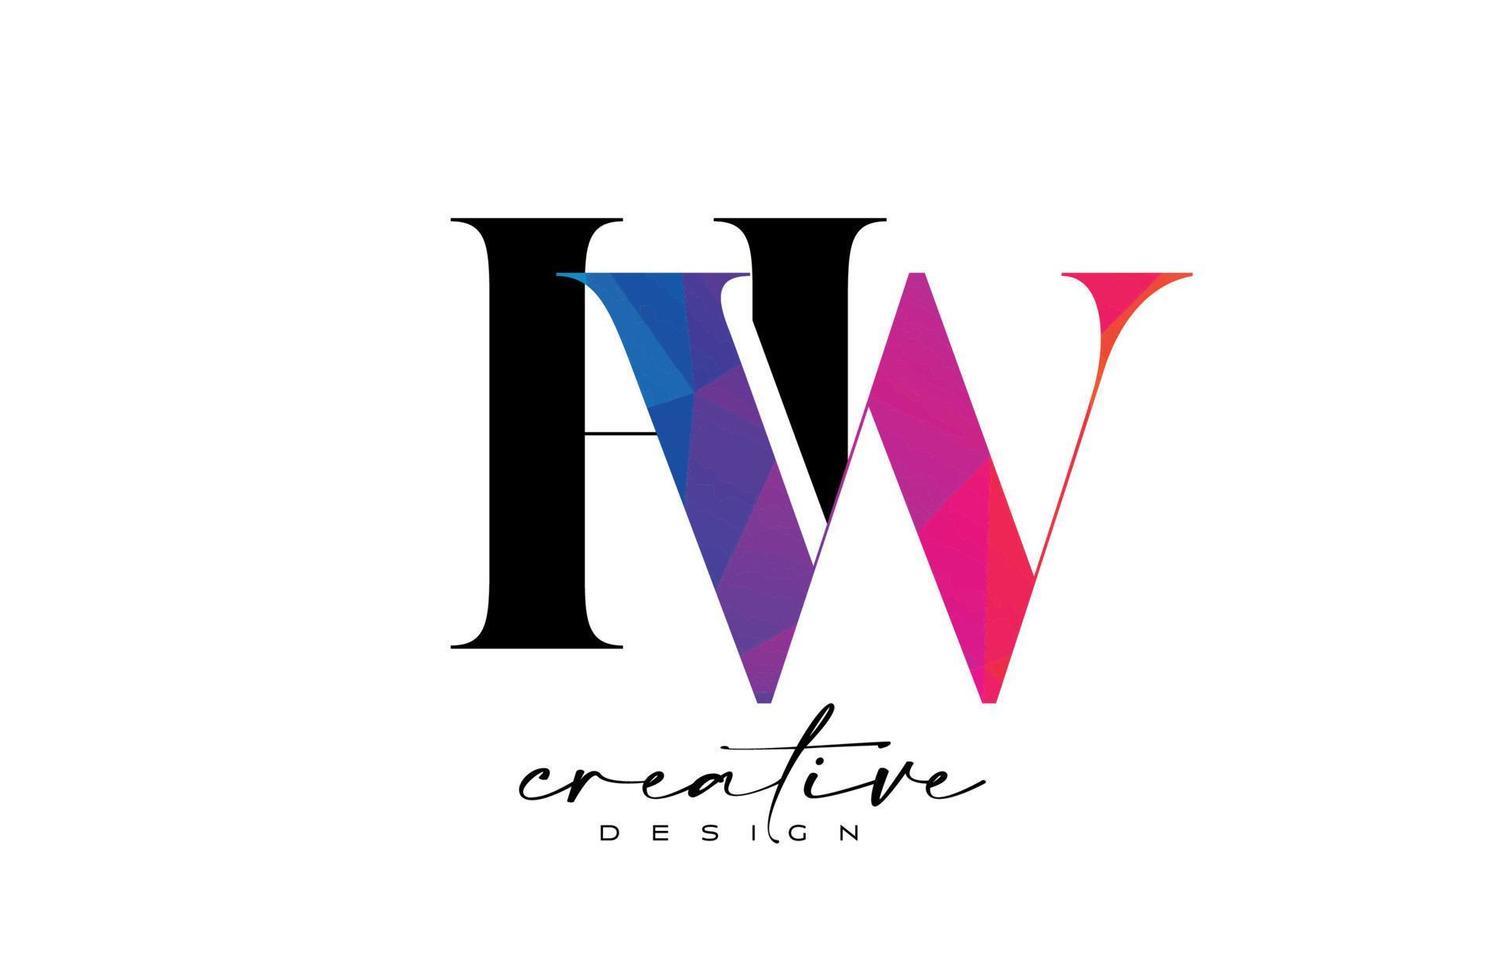 conception de lettre hw avec coupe créative et texture arc-en-ciel colorée vecteur